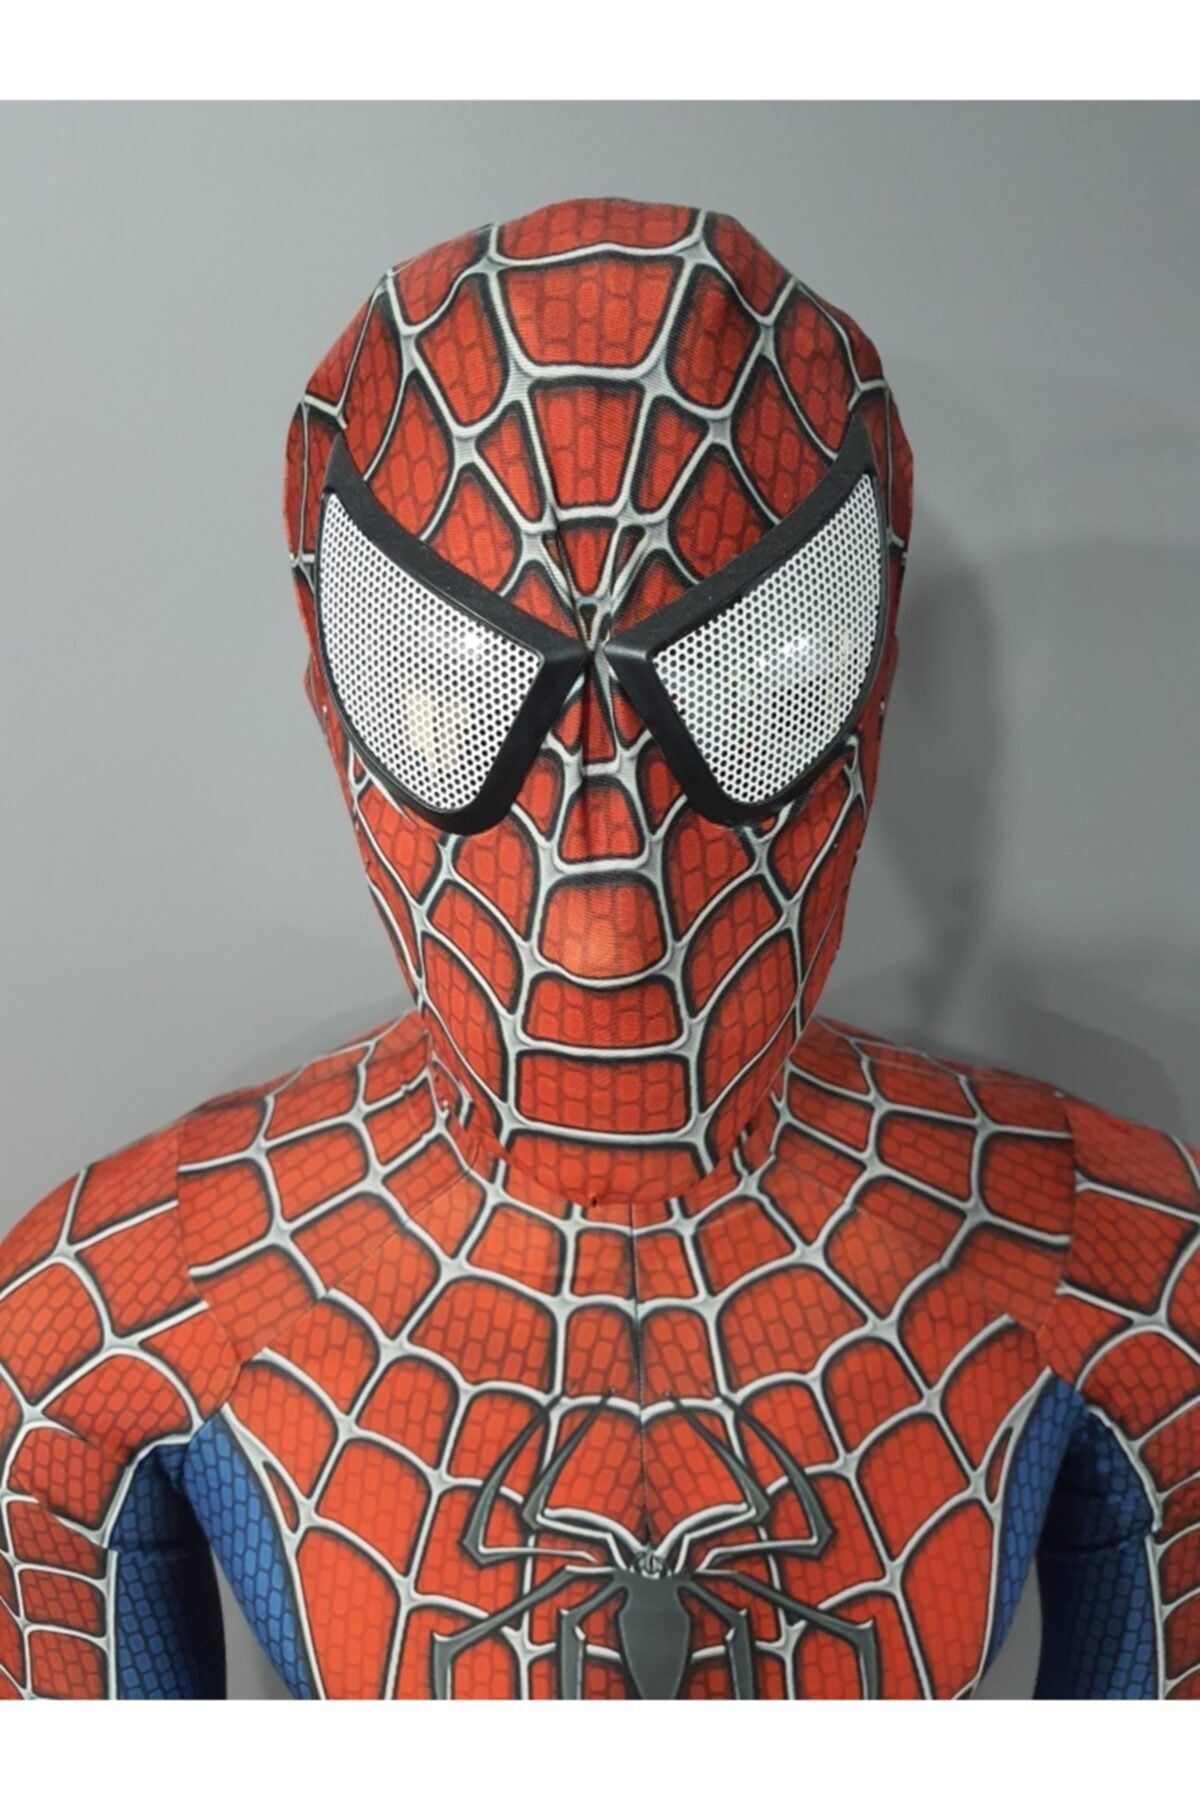 Örümcek Adam Spider Man Kostümü ( 3 Boyutlu Görünüm )